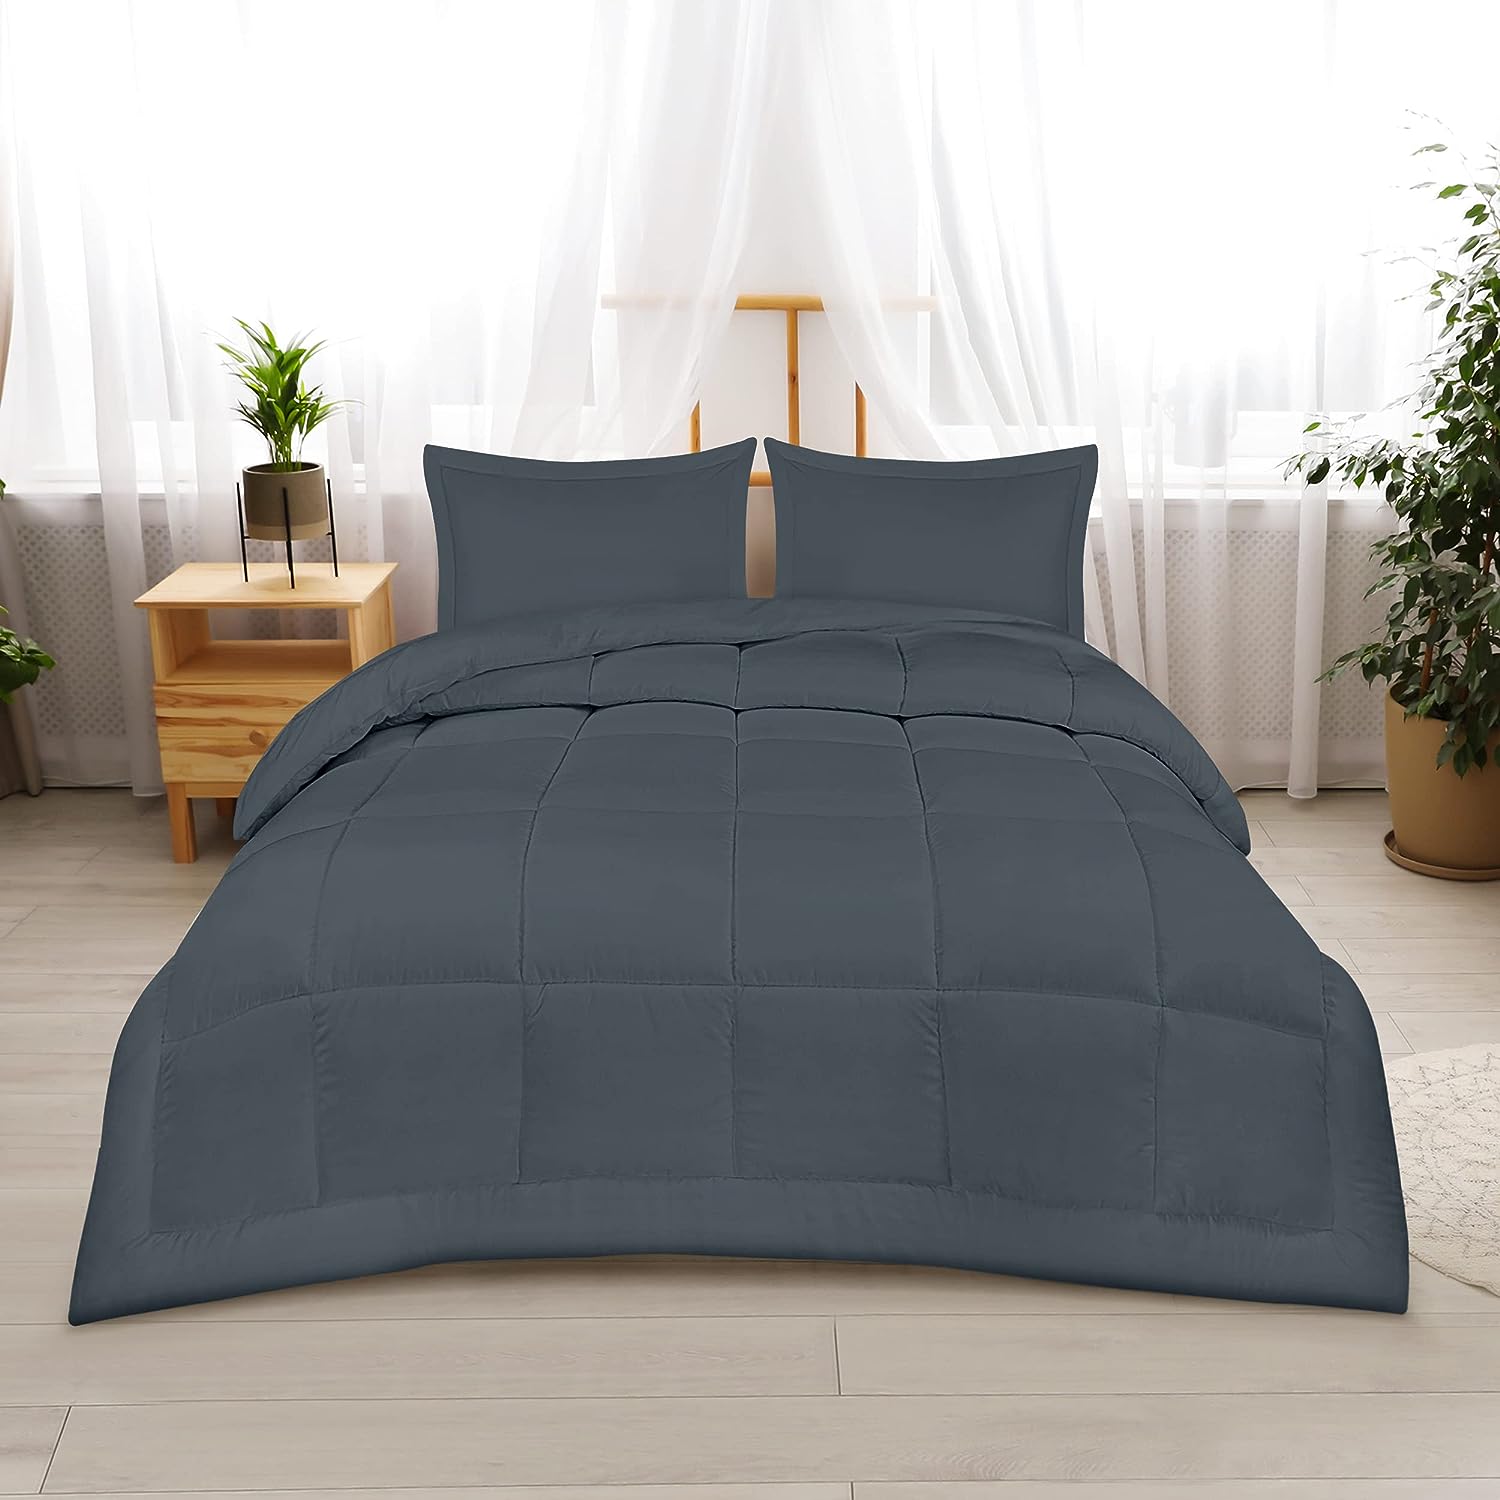 Utopia Bedding Printed Comforter Set (Queen, Grey) with 2 Pillow